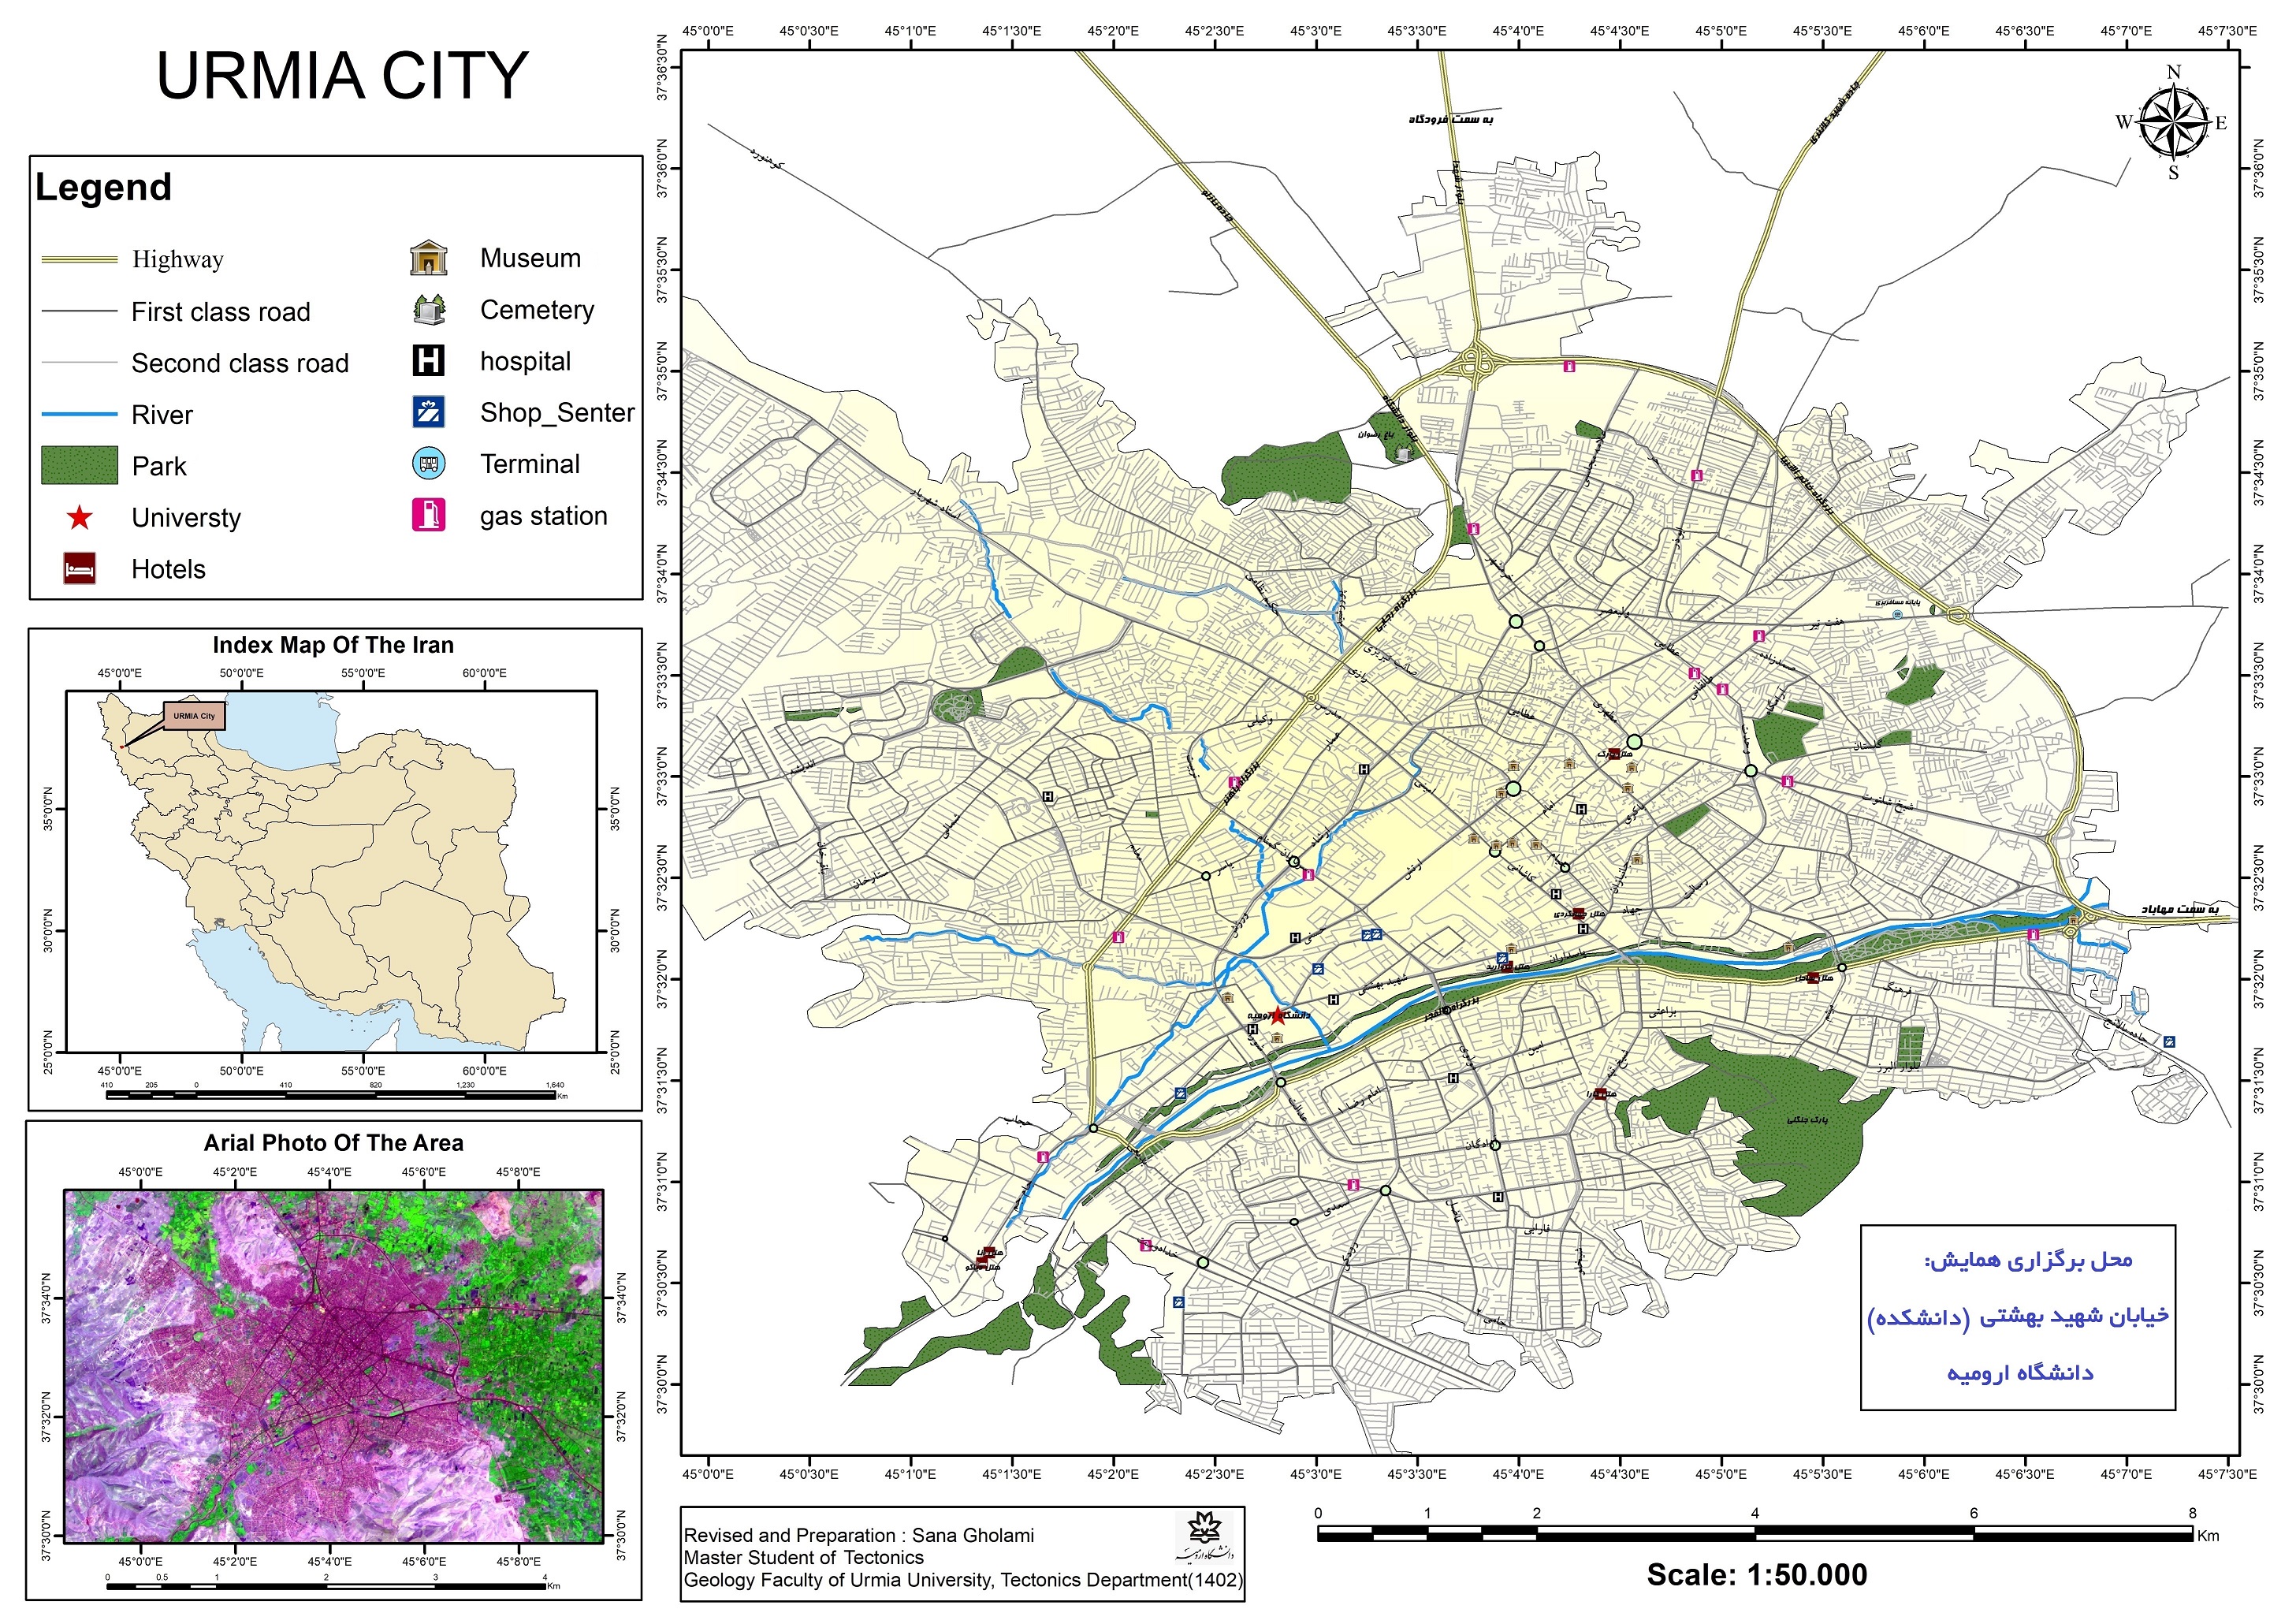 نقشه اروميه و آدرس محل برگزاري همايش در پرديس شهر